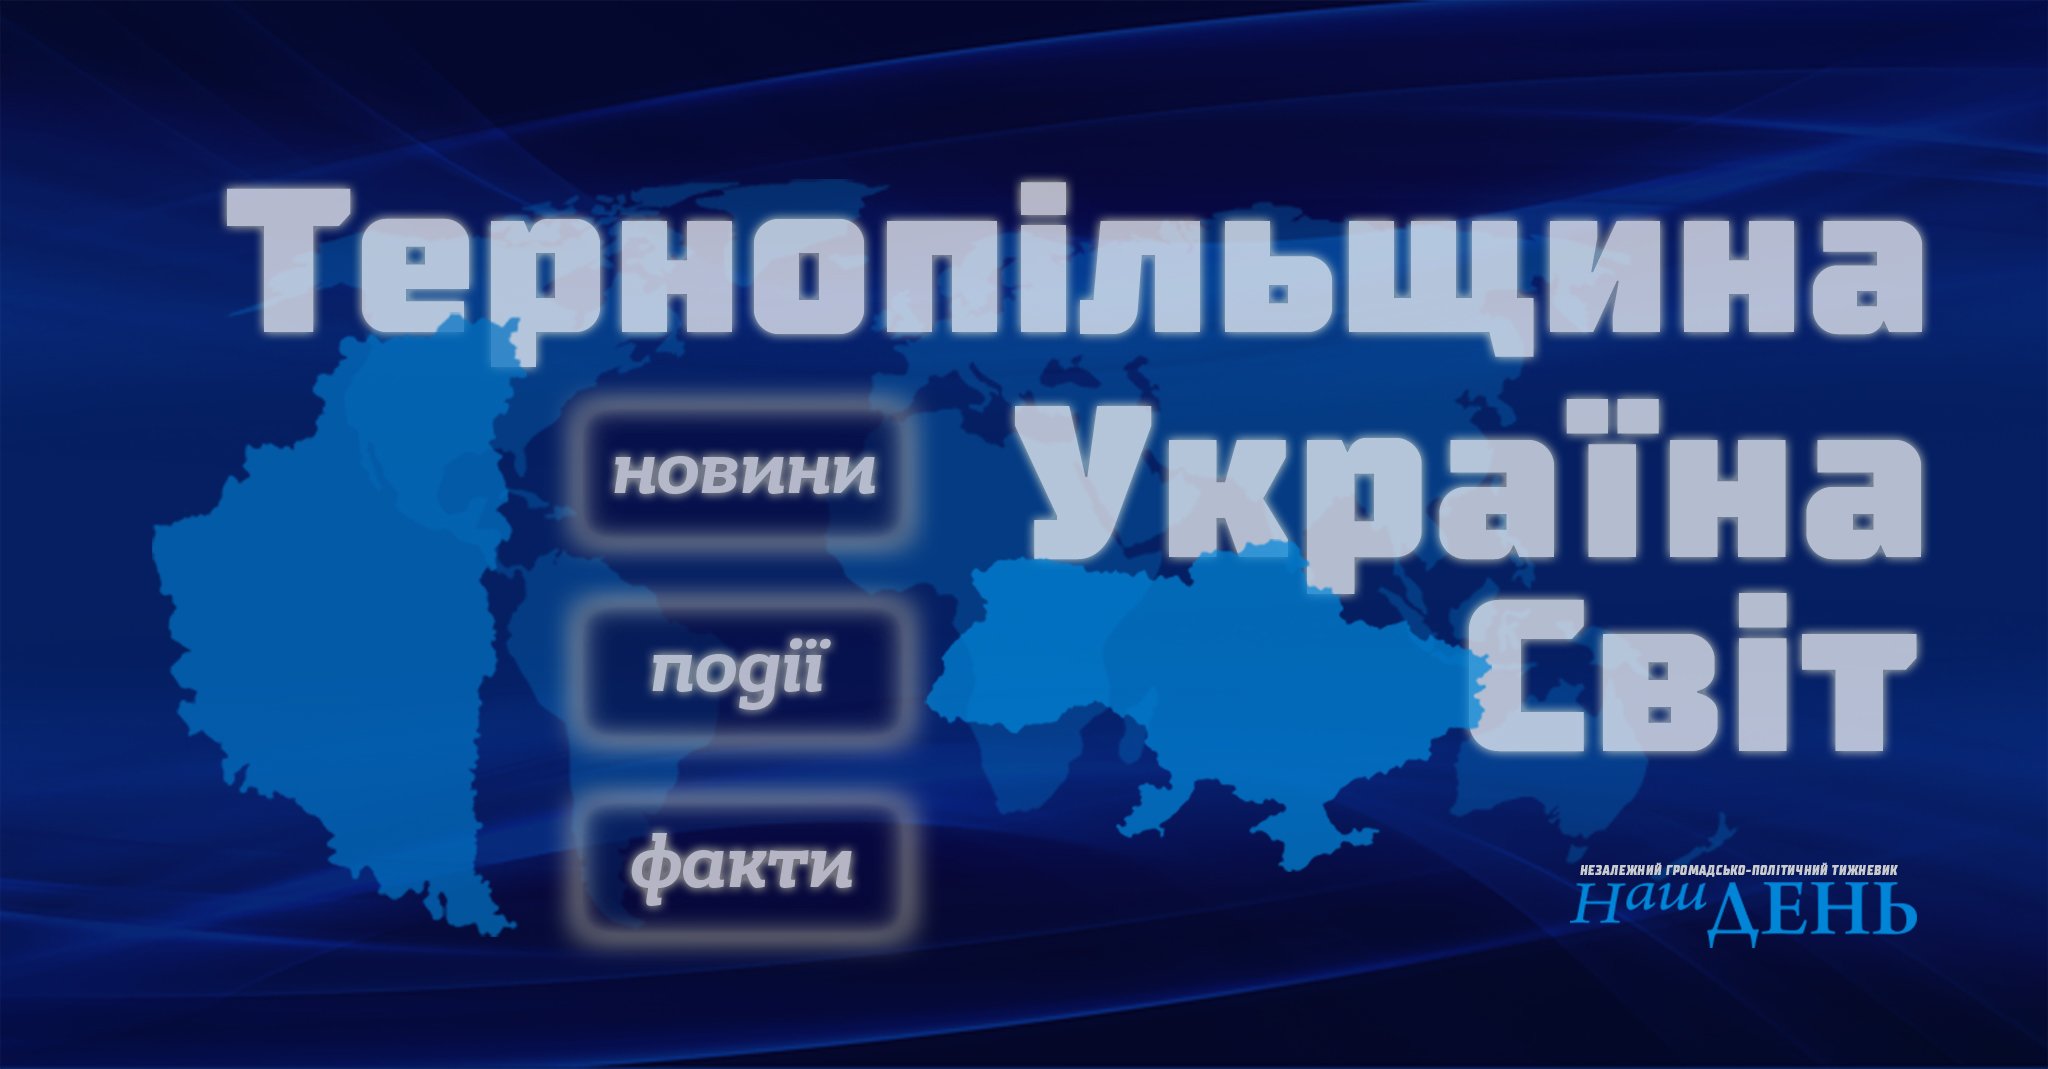 Тернополянин, торгуючи через інтернет, втратив 30 тис. грн, а підприємець з Теребовлянщини – 1,5 тис. грн